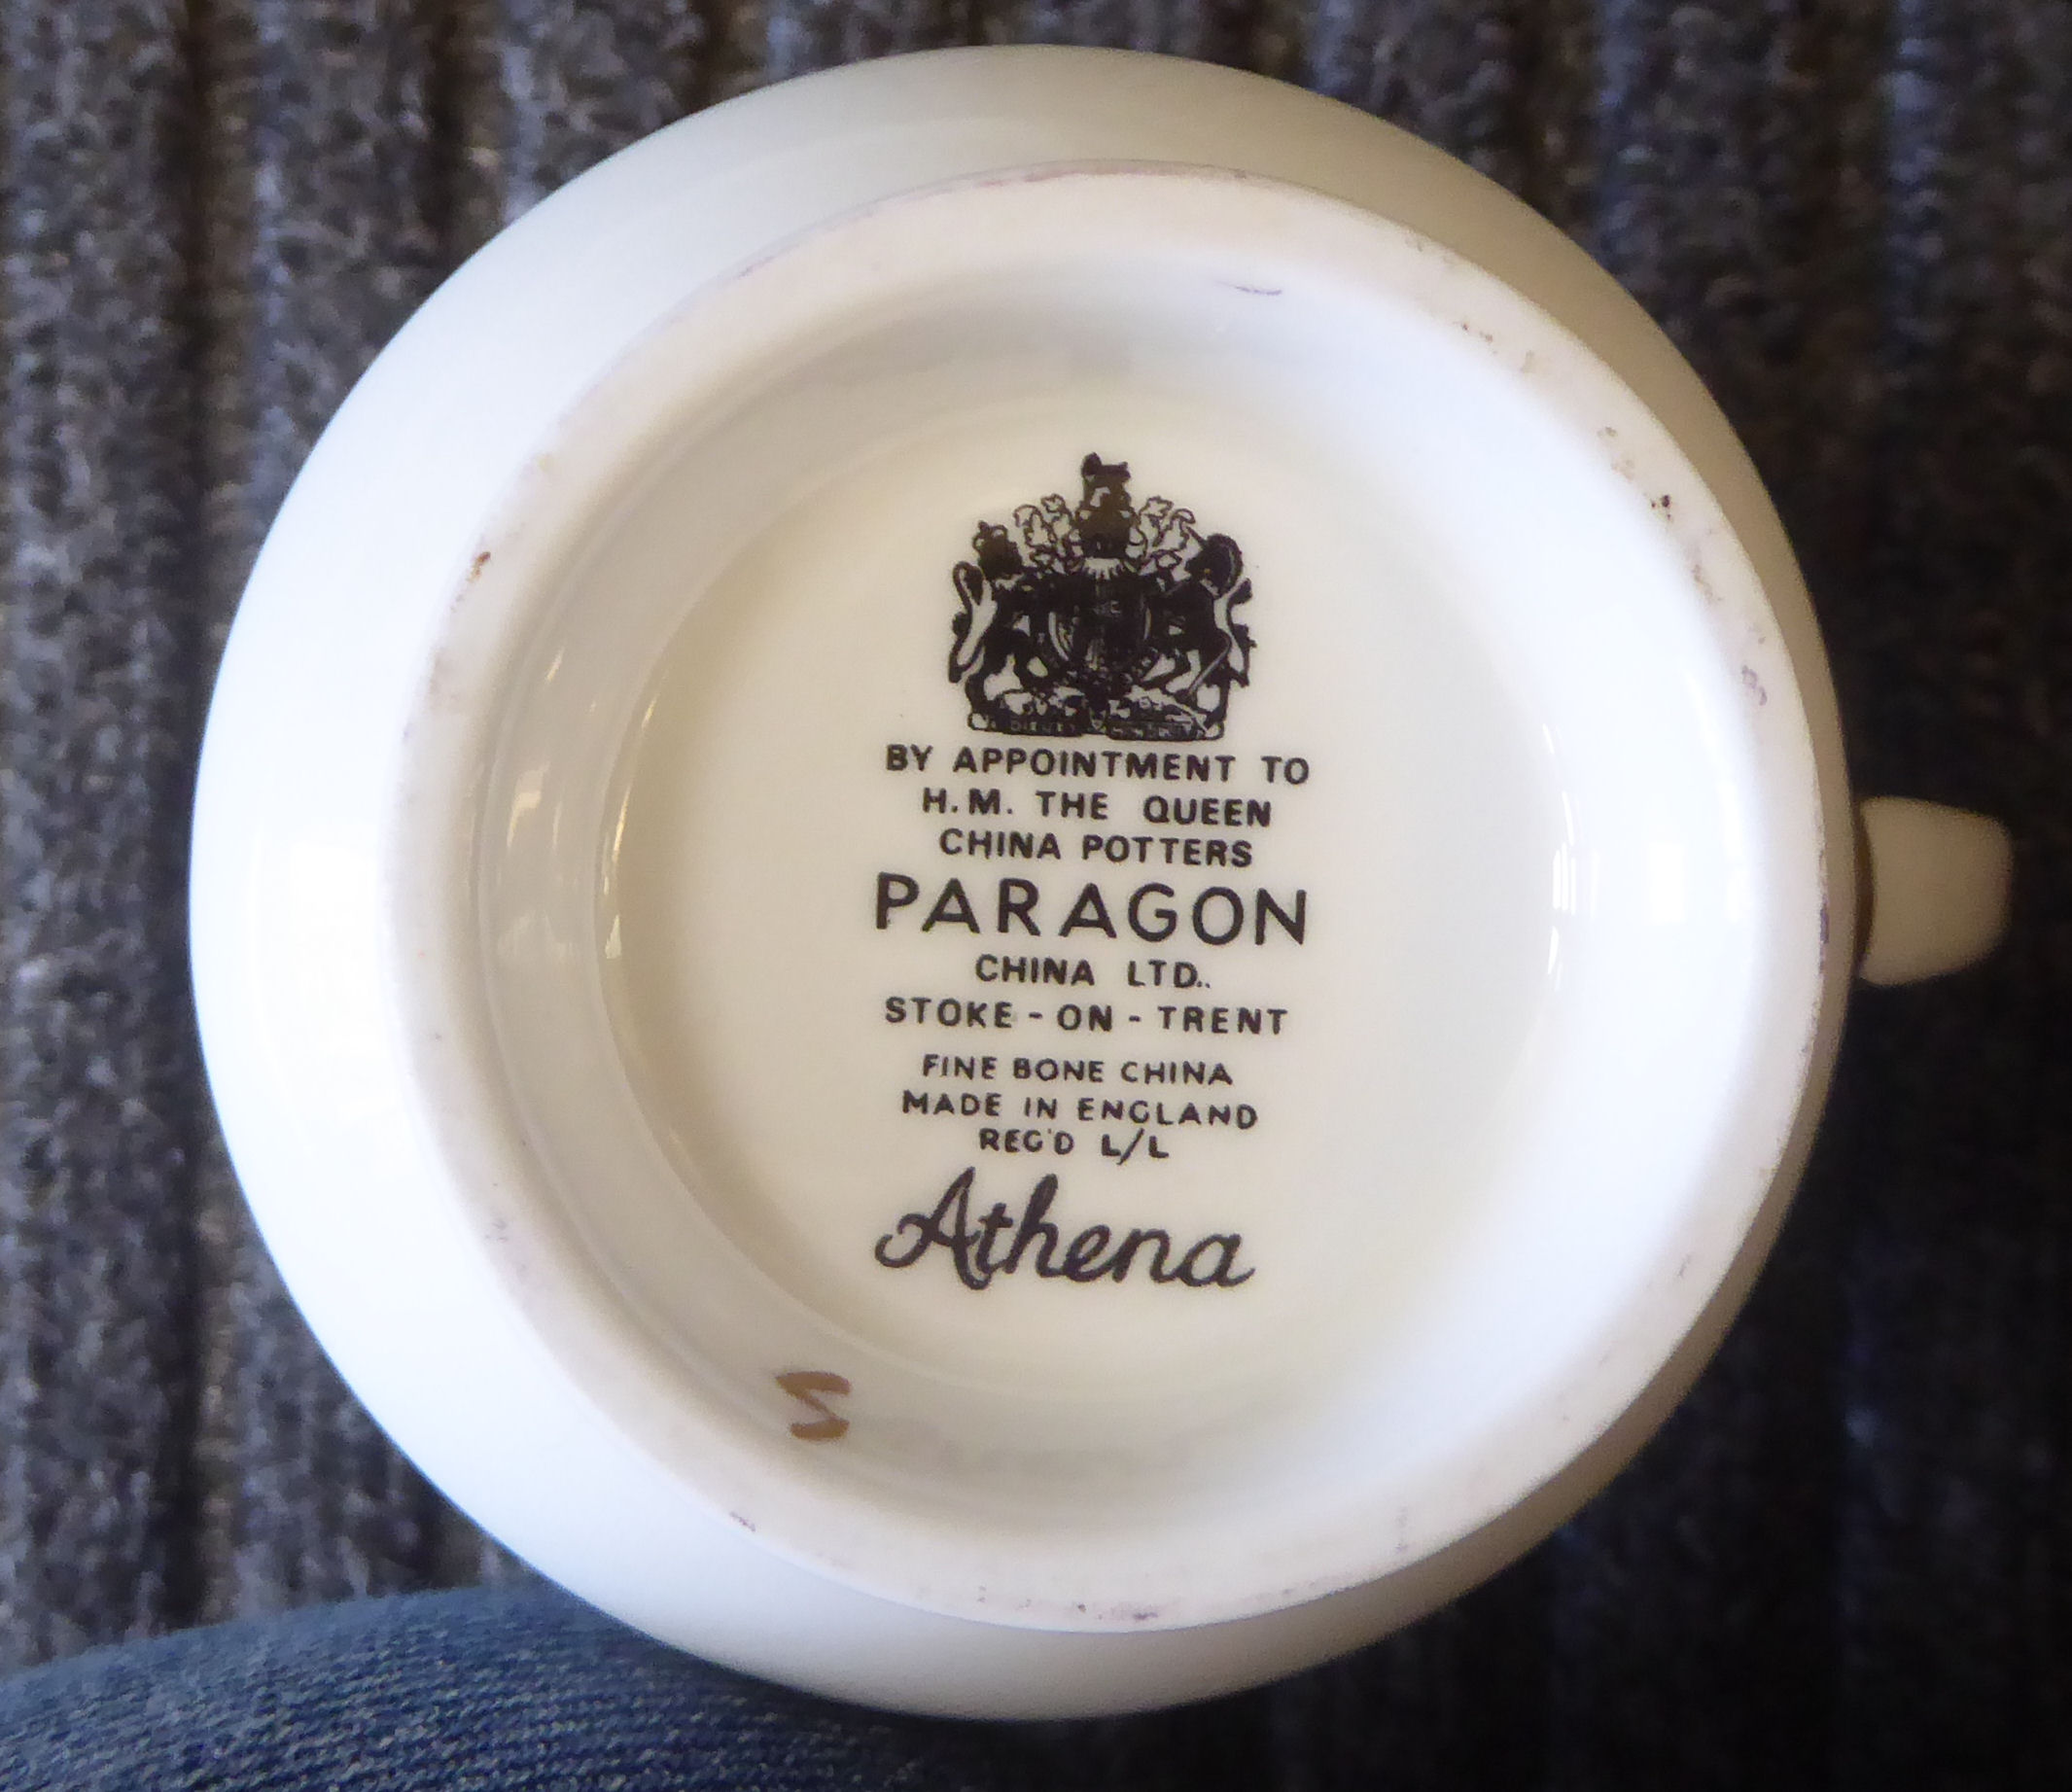 Paragon bone china Athena pattern teaware - Image 3 of 3